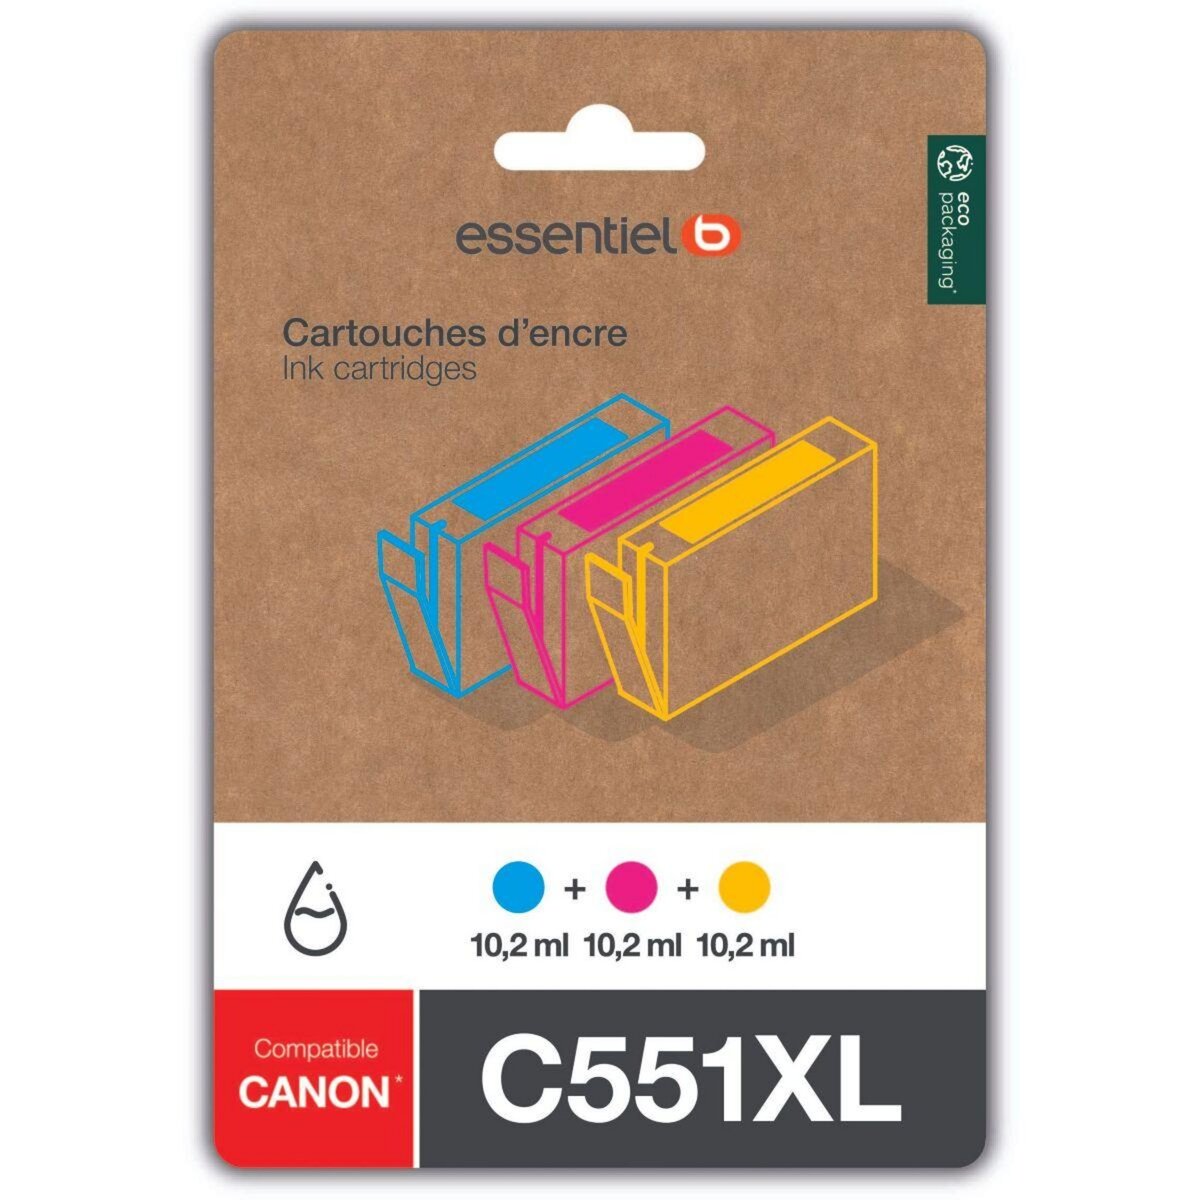 ESSENTIEL B Cartouche d'encre C551 XL 3 couleurs